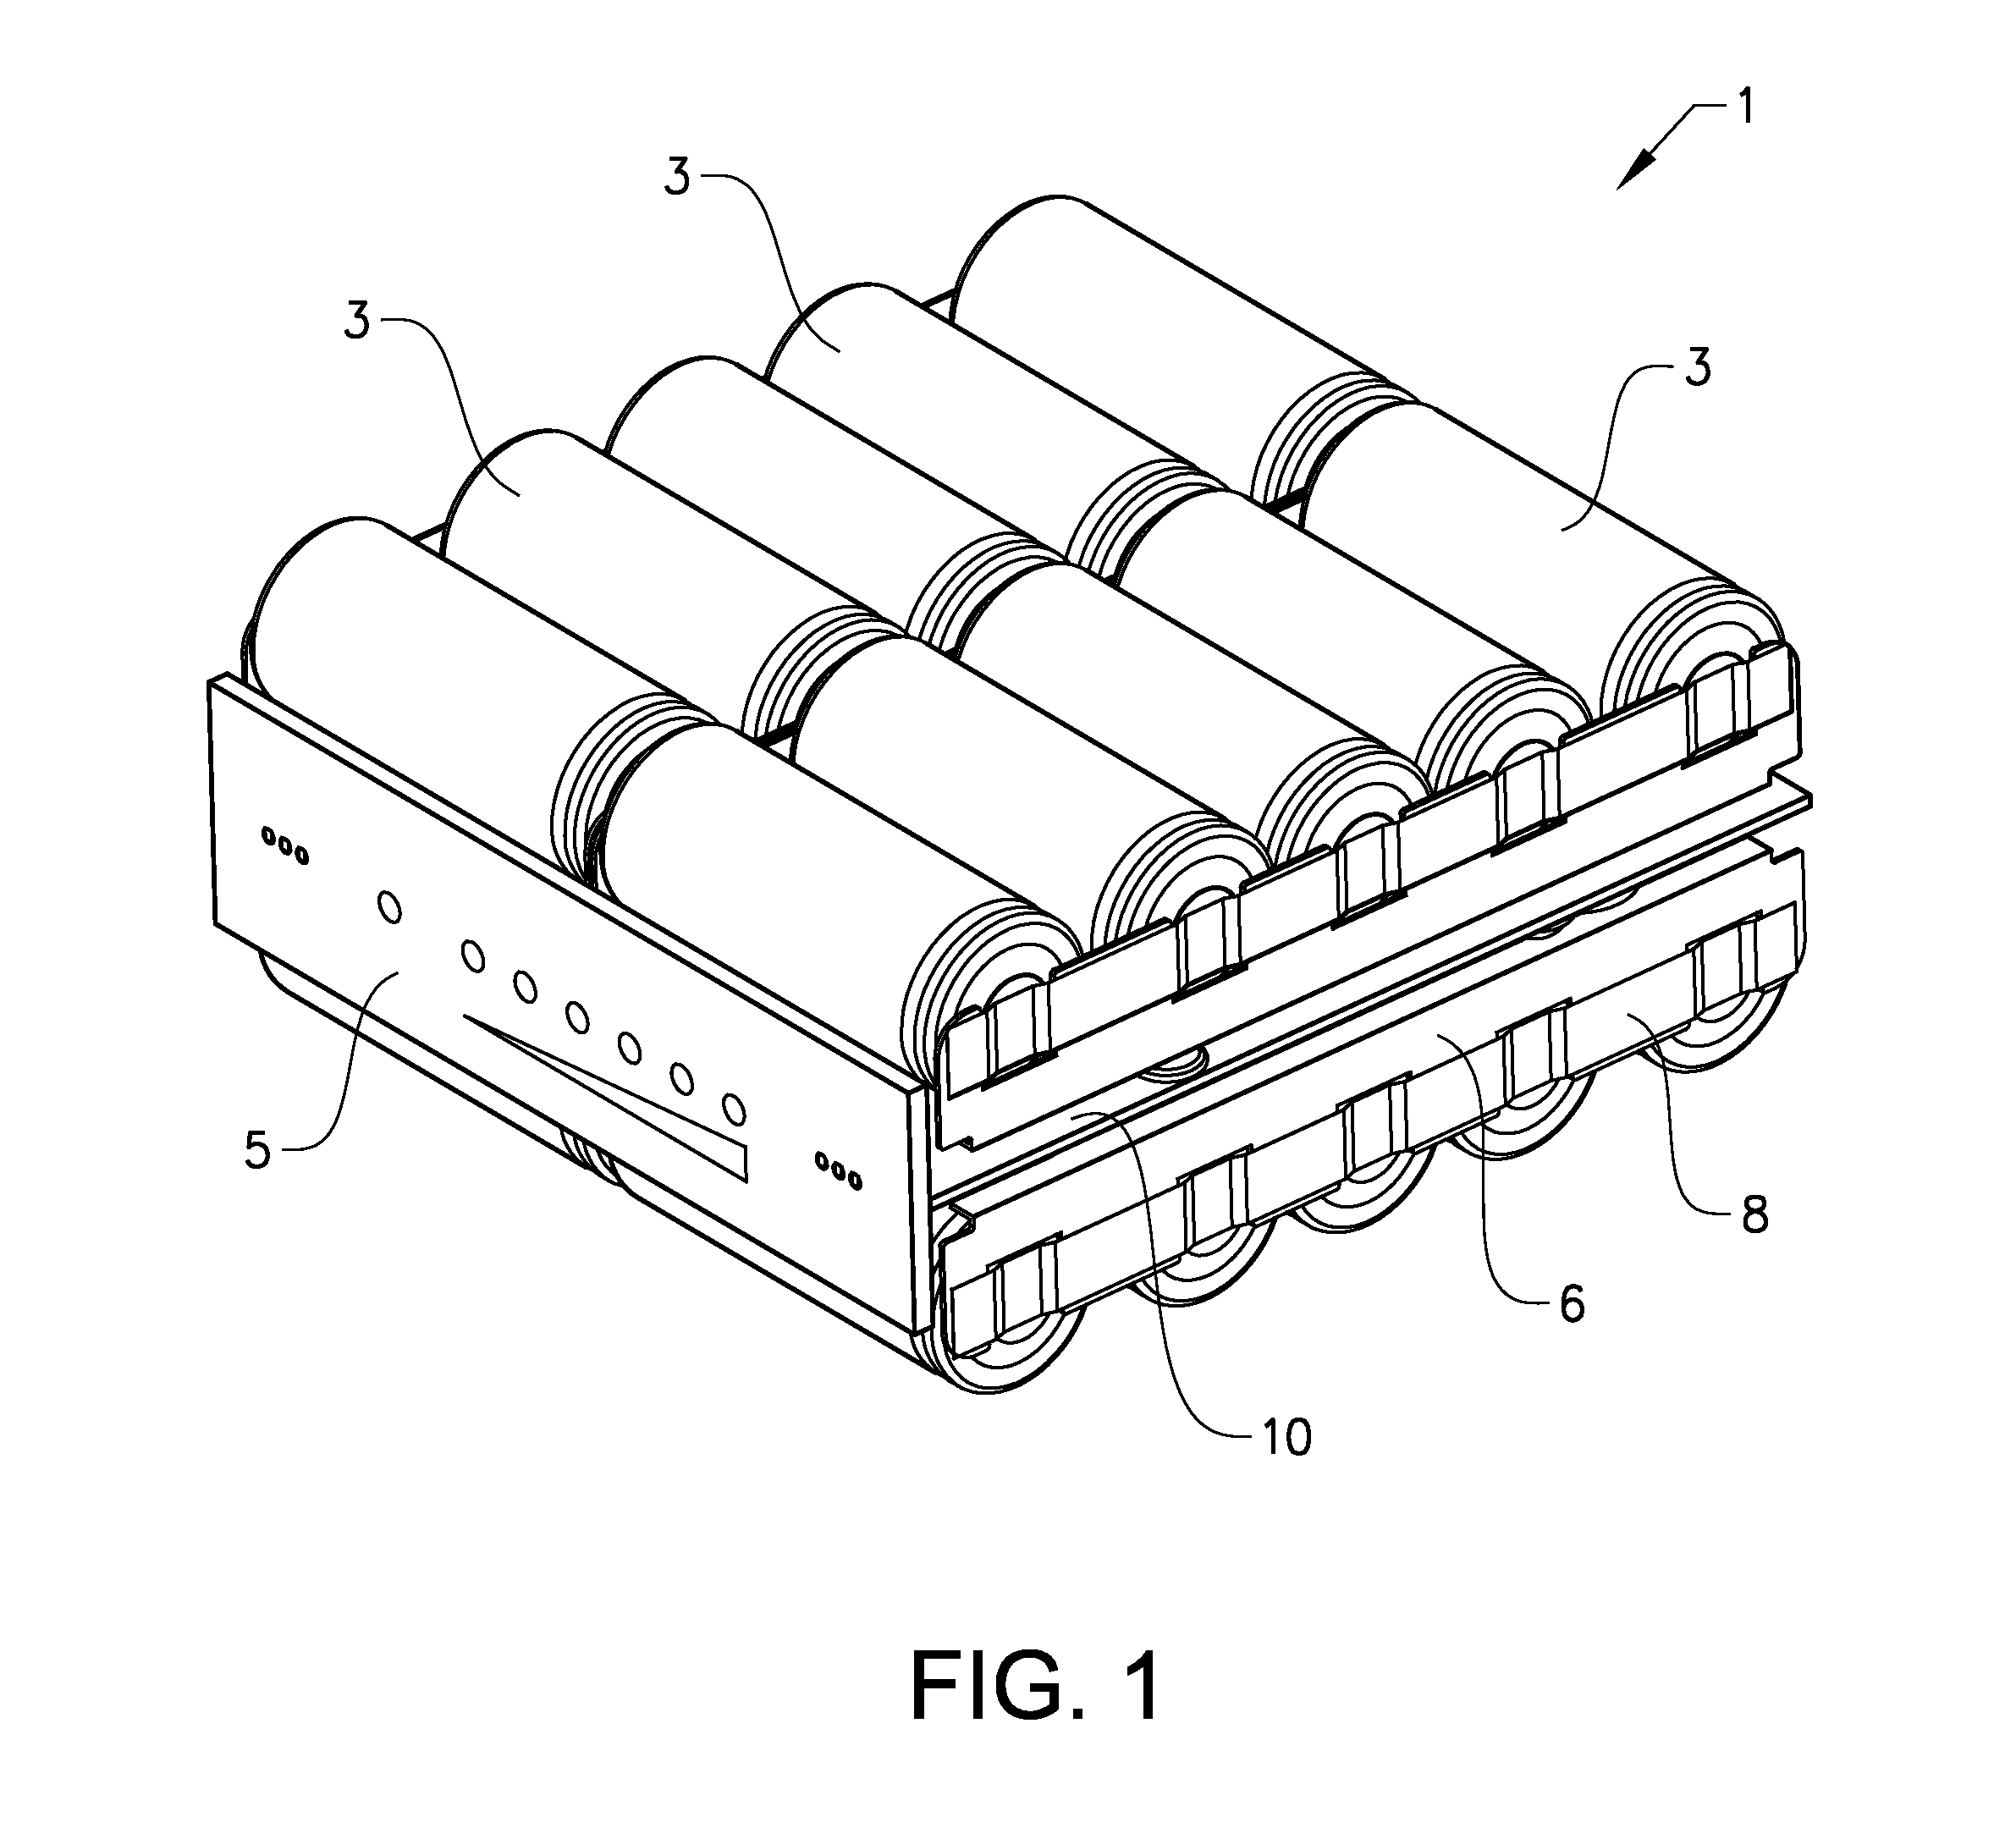 Battery assembly